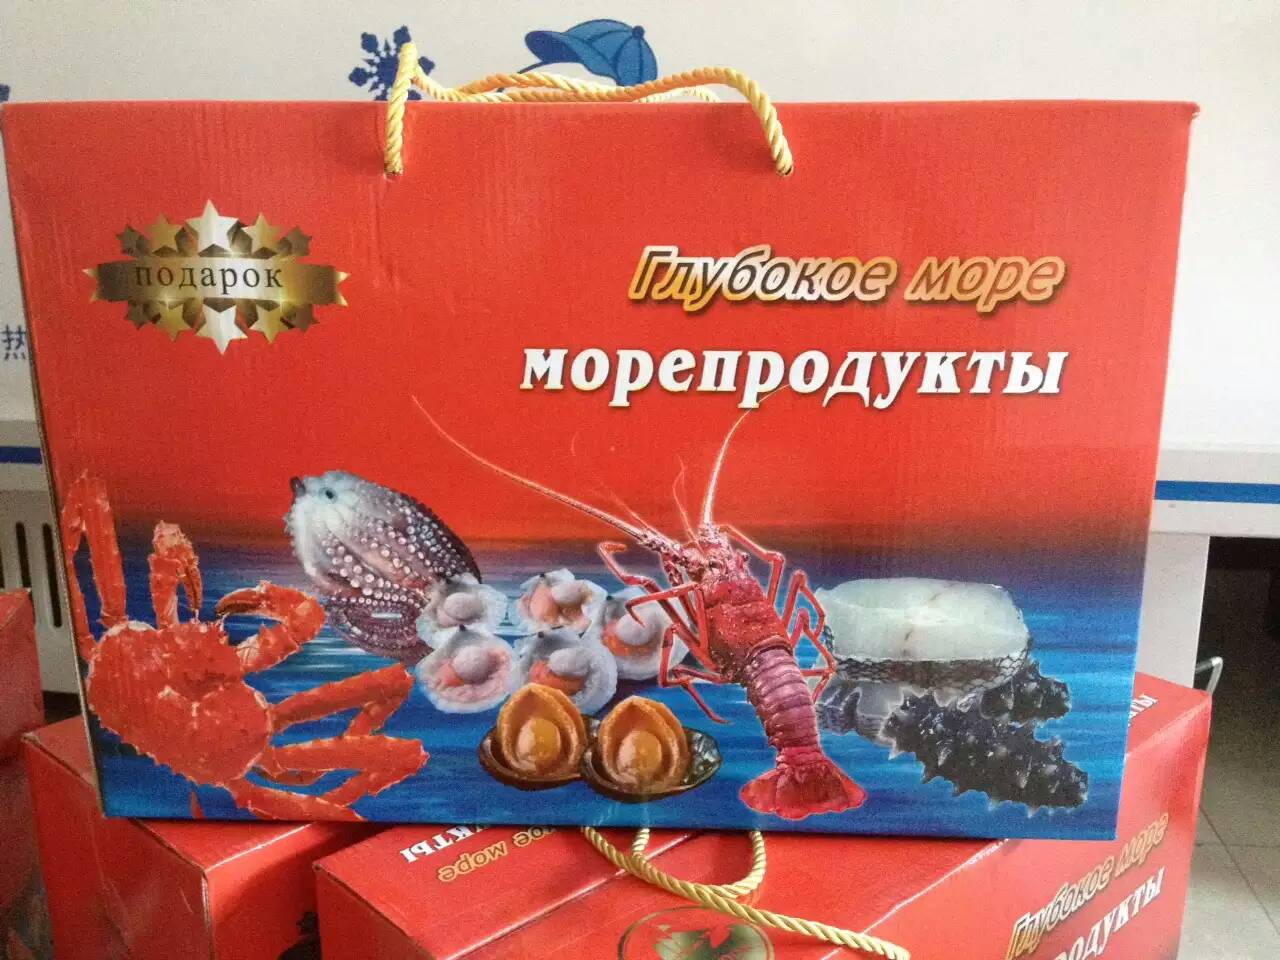 俄罗斯海鲜大礼包 馈赠佳品